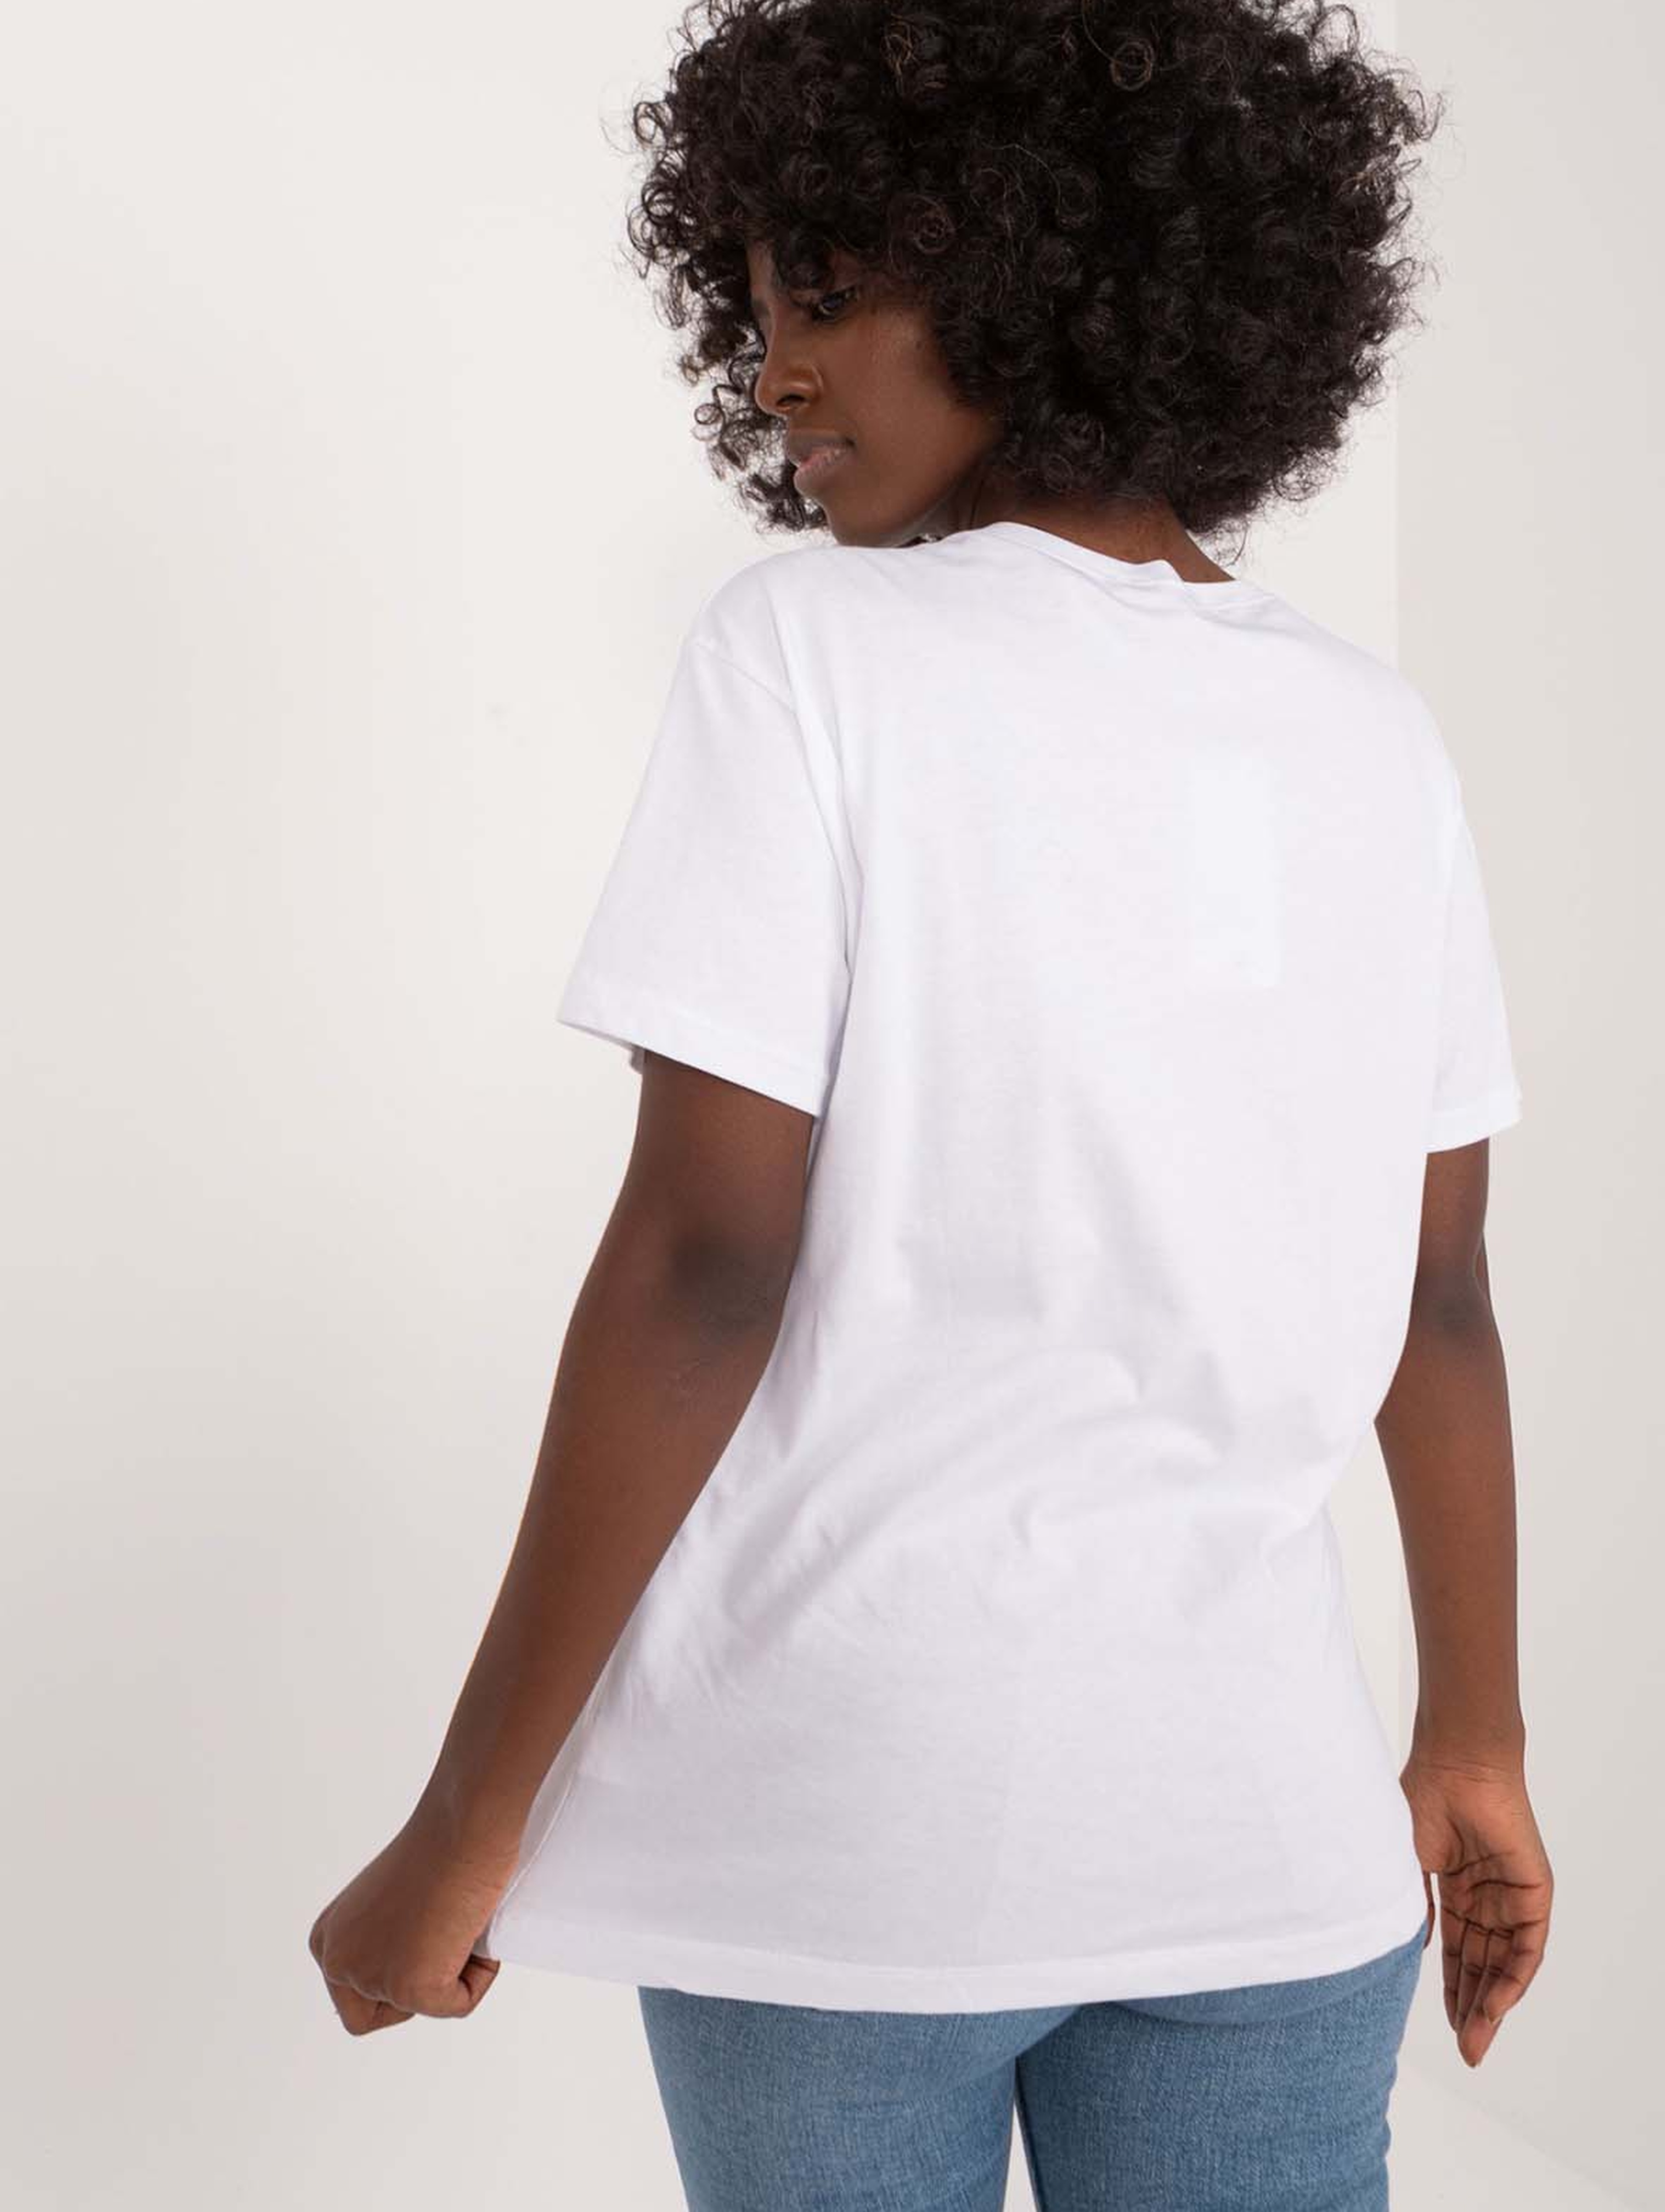 Biały bawełniany t-shirt damski z misiem i kokardą